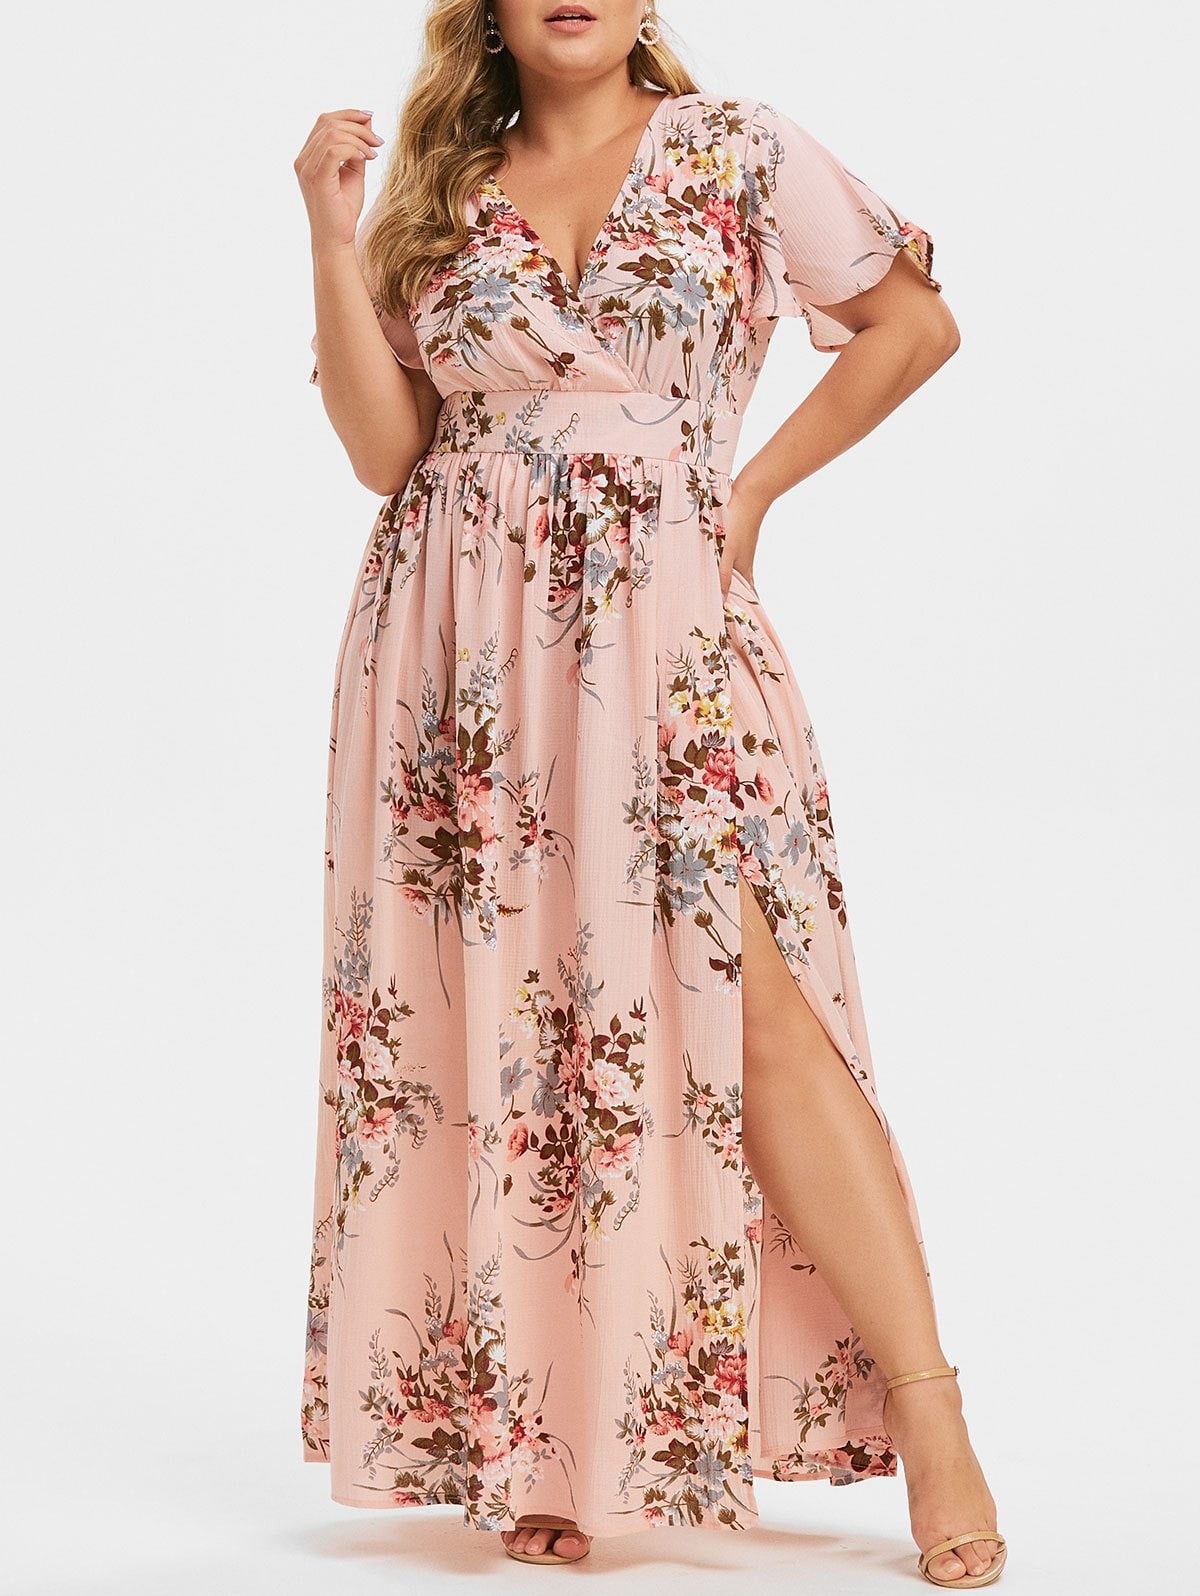 Plus Size Floral Maxi Dress - women fashion